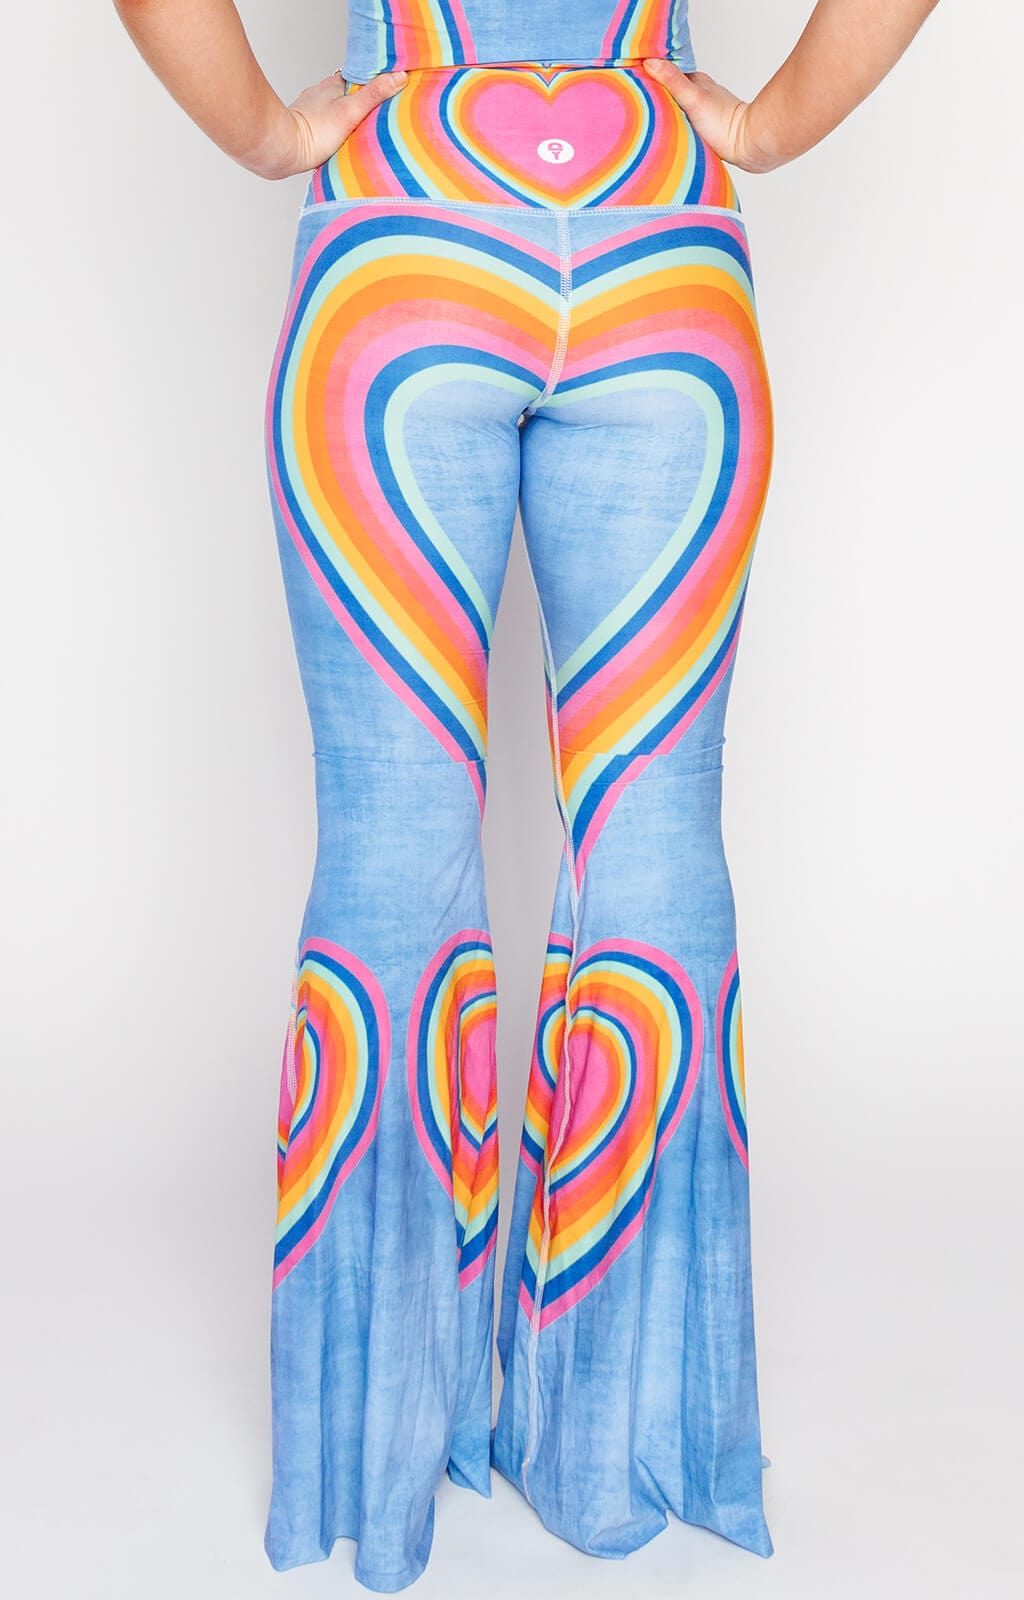 Unicorn Rainbow Yoga Pants for a Fabulous New Look - Moochly